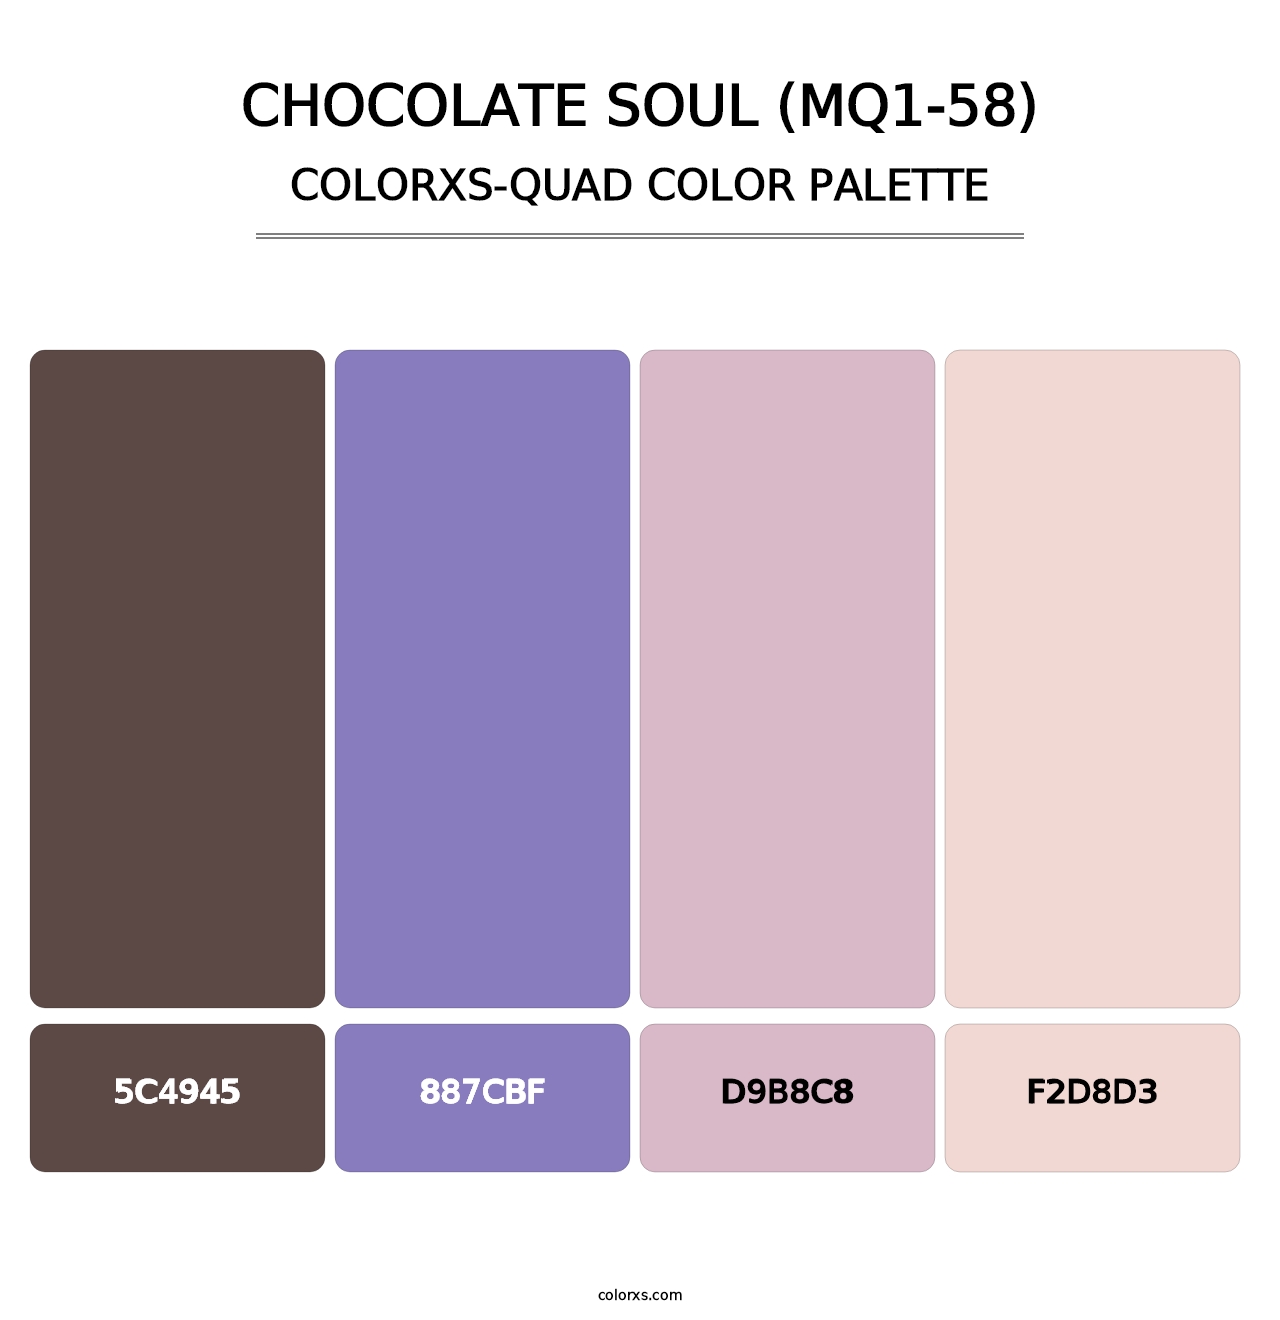 Chocolate Soul (MQ1-58) - Colorxs Quad Palette